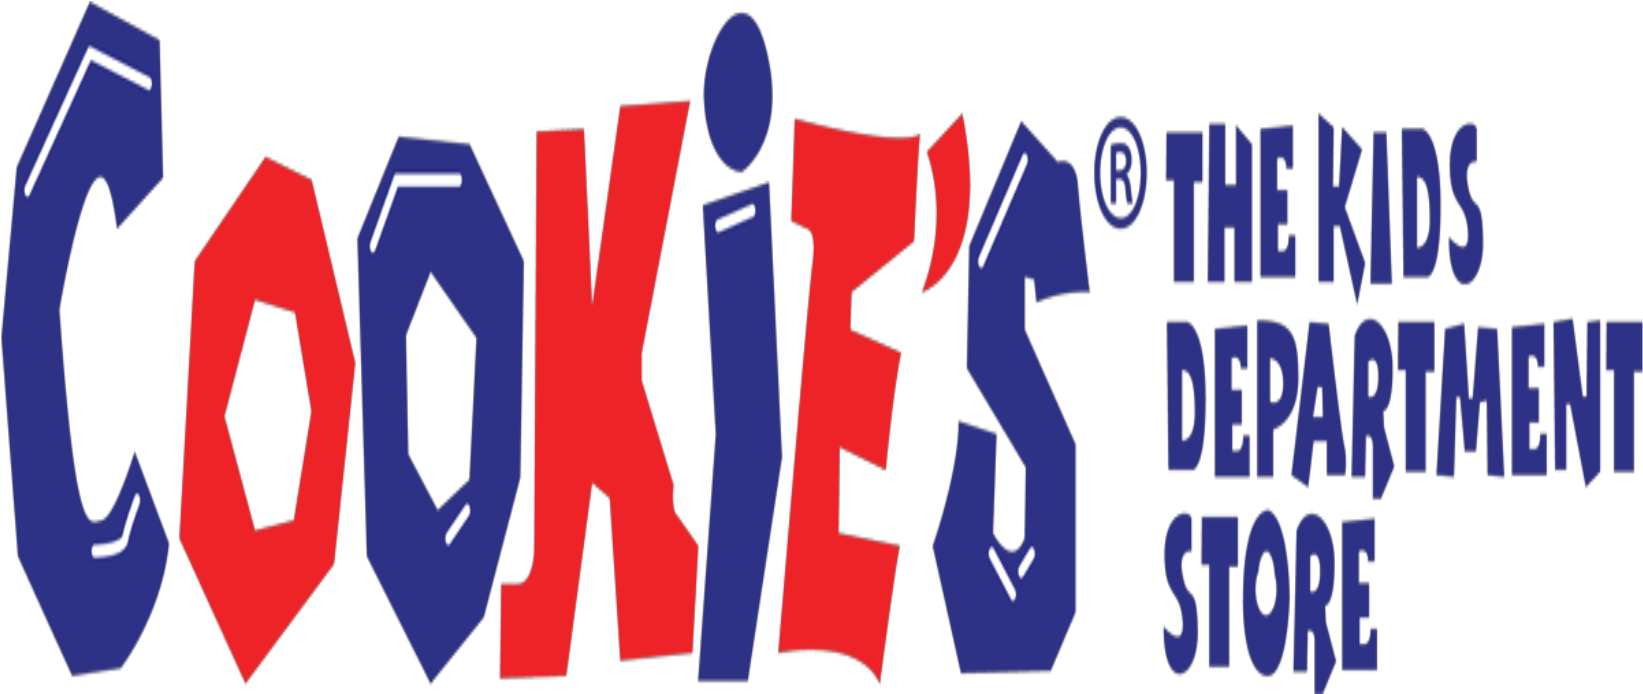 Cookies'kids - Graphic Design (1800x1200)